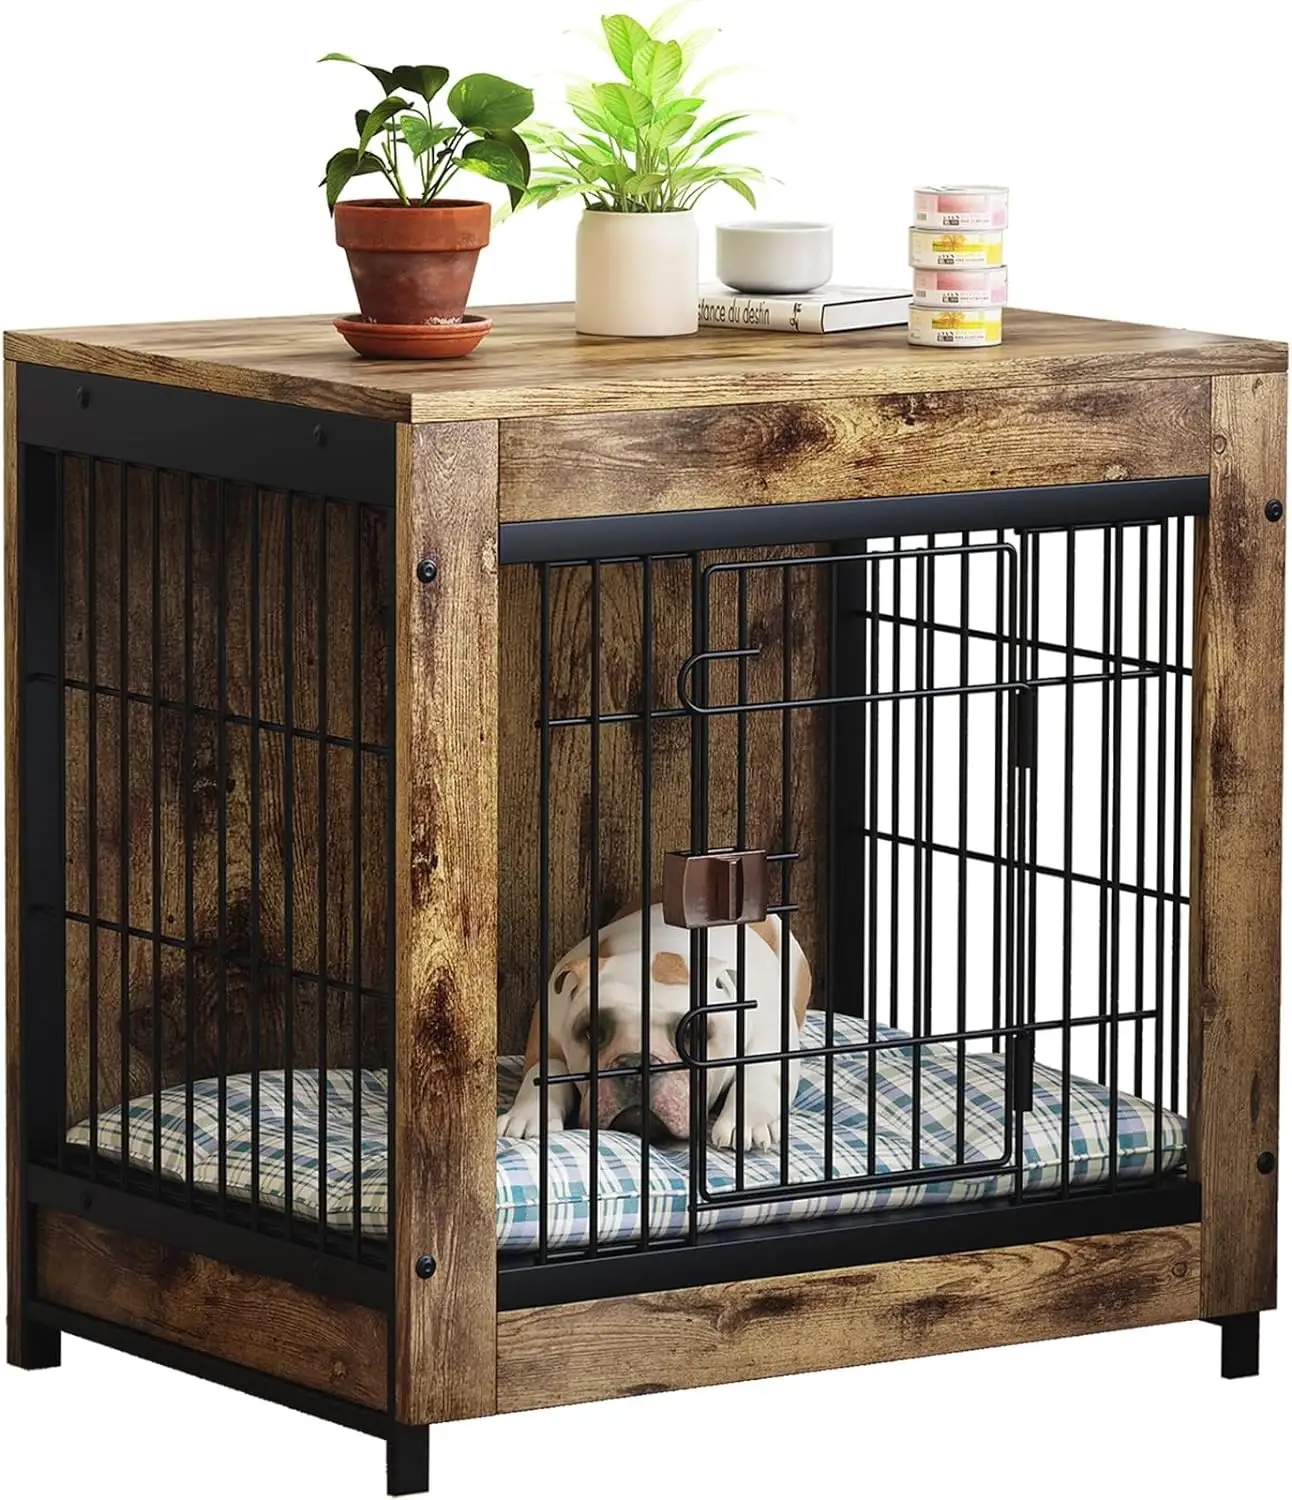 Cane cassa mobili canile cuccia tavolo interno con rimovibile all'ingrosso in legno gabbia per cani mobili